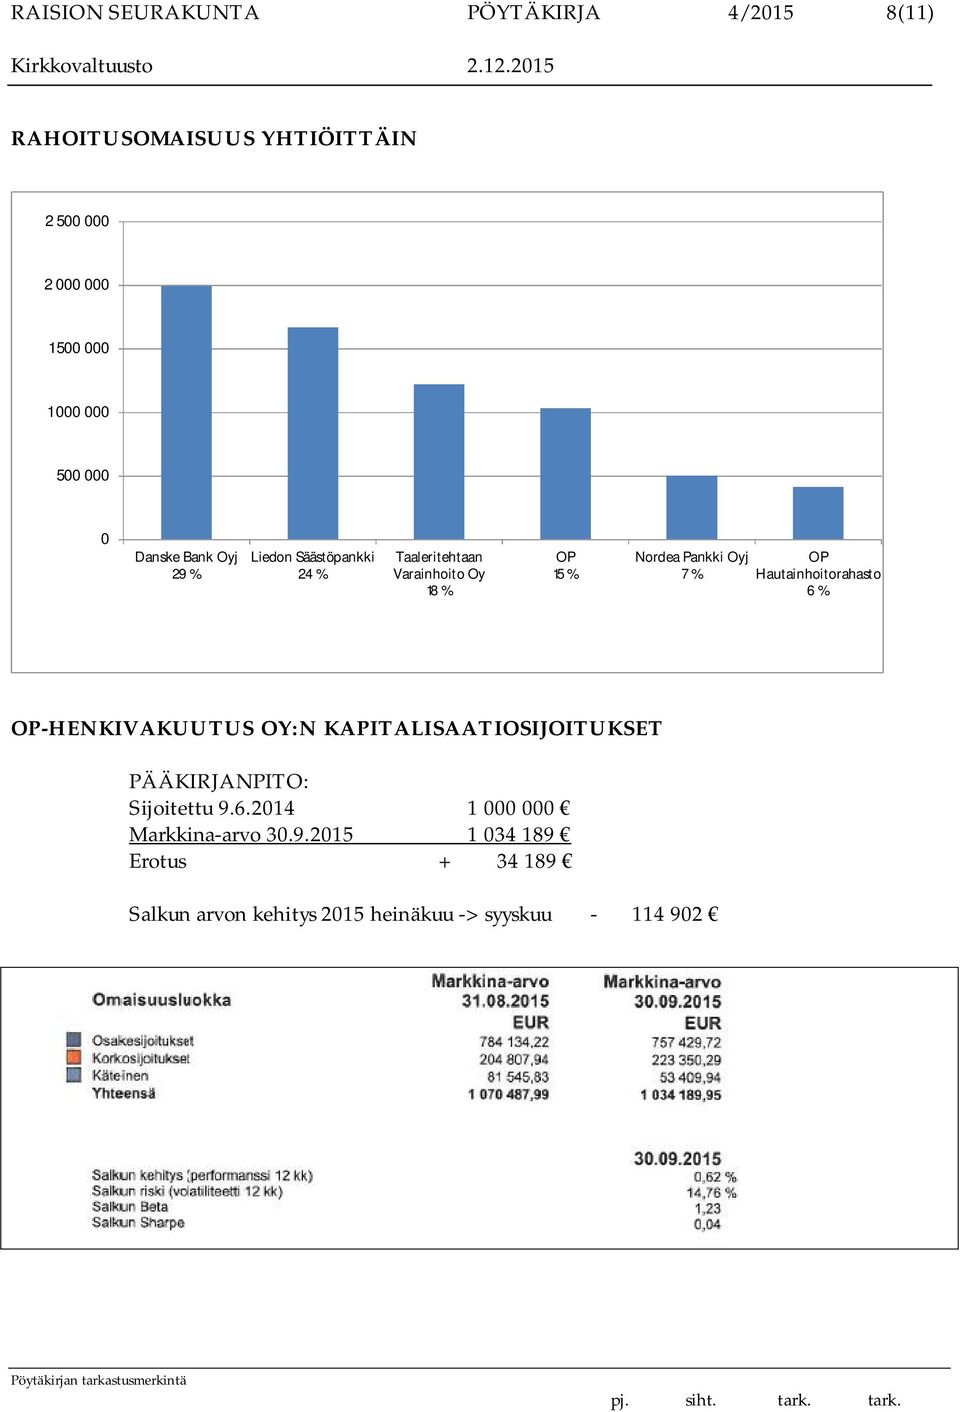 Oyj 7 % OP Hautainhoitorahasto 6 % OP-HENKIVAKUUTUS OY:N KAPITALISAATIOSIJOITUKSET PÄÄKIRJANPITO: Sijoitettu 9.6.2014 1 000 000 Markkina-arvo 30.